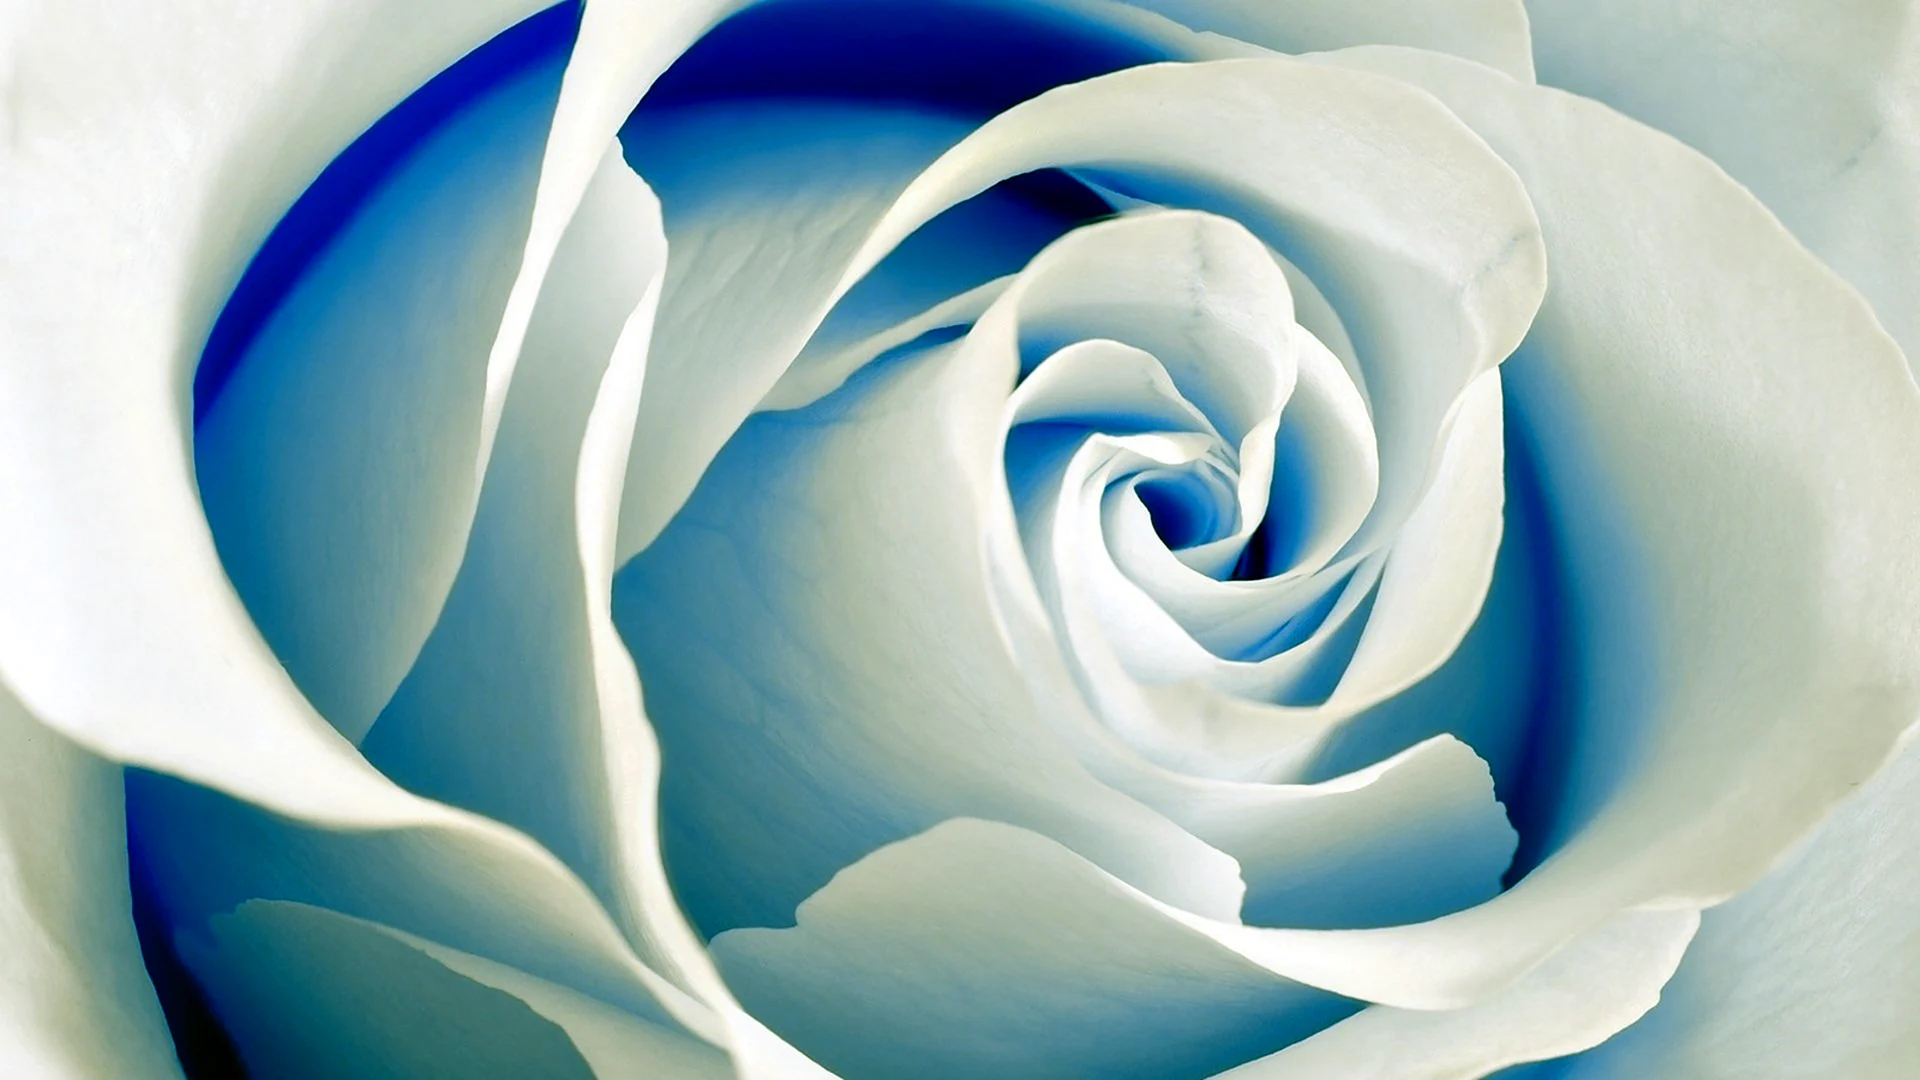 Бело голубые розы